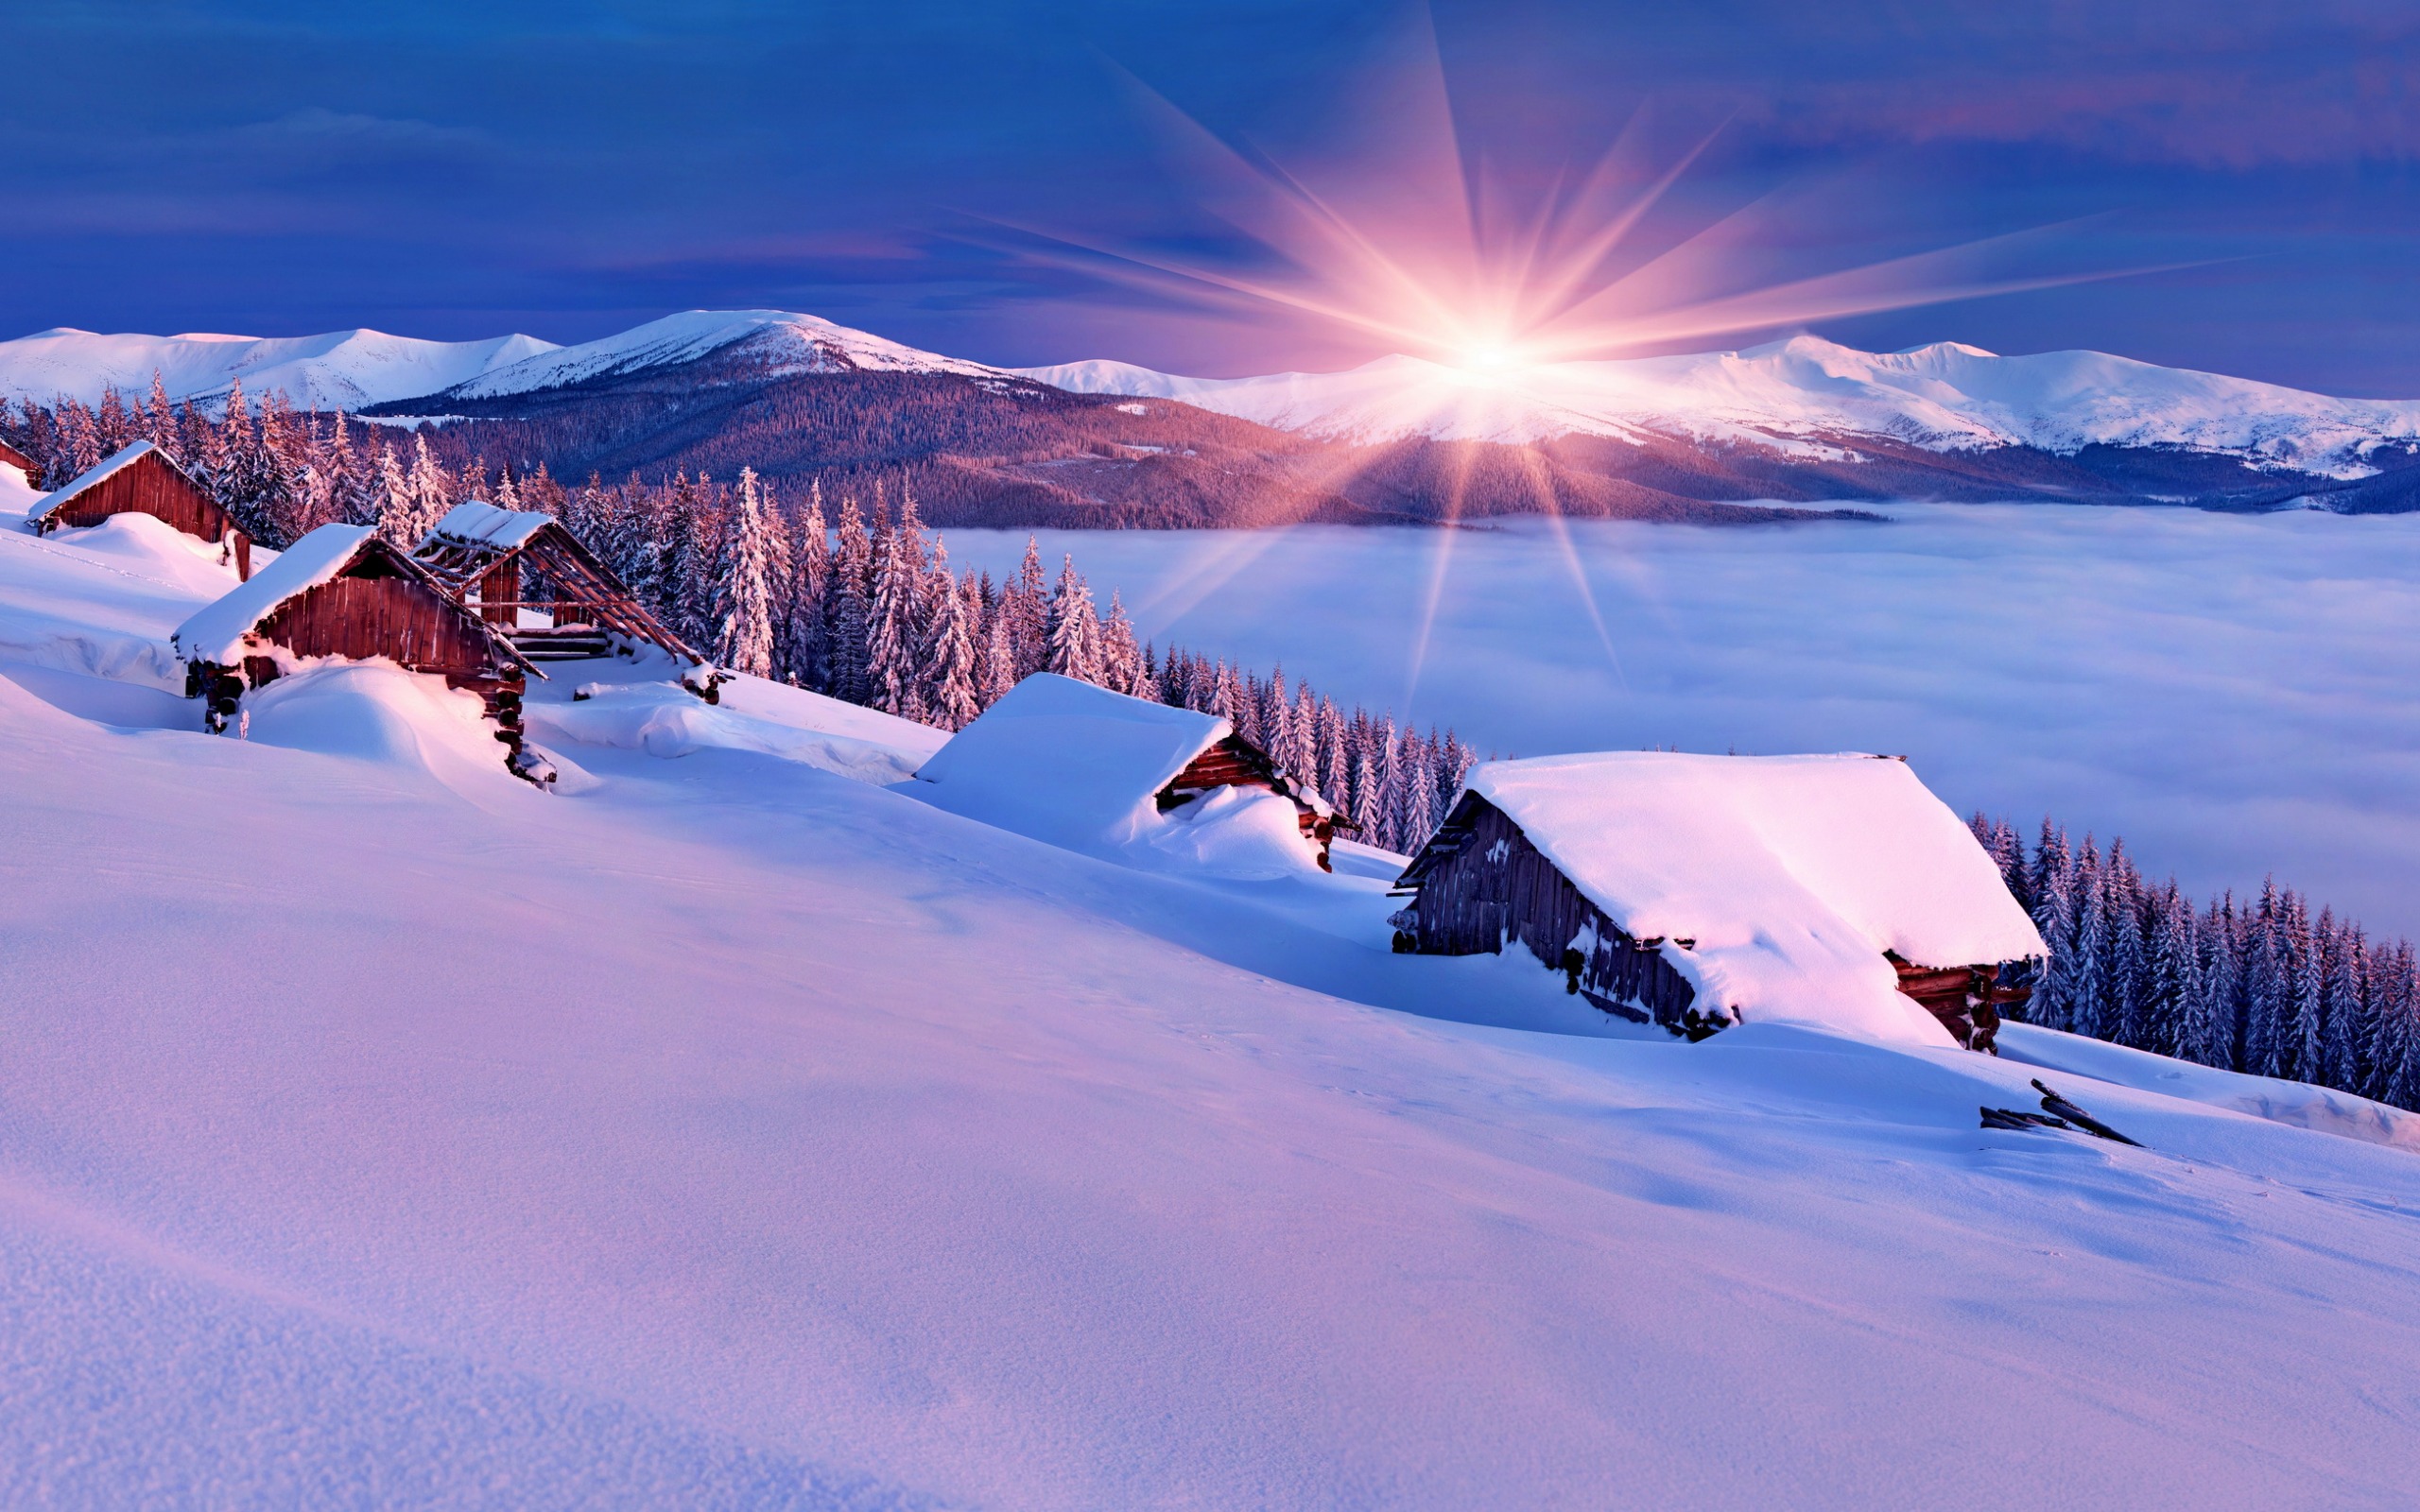 2560х1600 деревня избы в снегу лучи солнца из-за гор